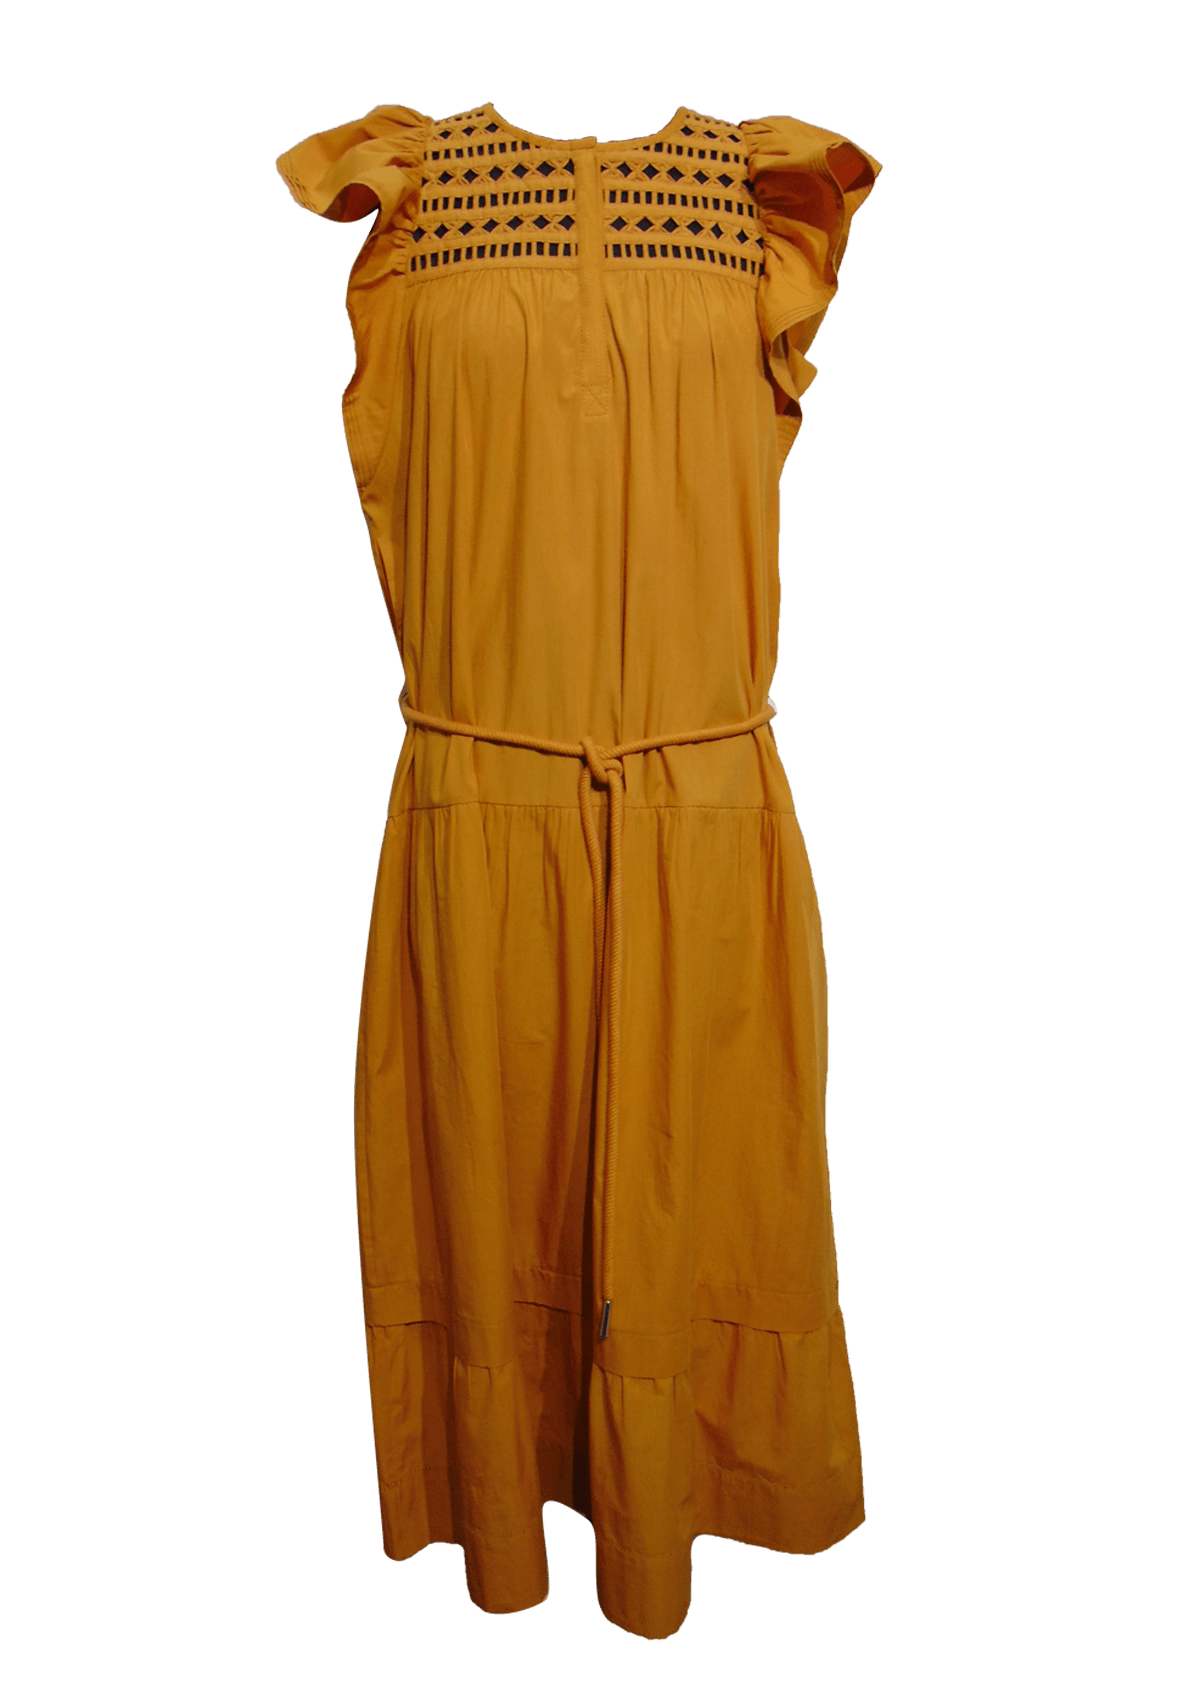 Damen Boho-Kleid mit Lochstickerei, rostfarbig in Midilänge Damen Kleid Scarlett Poppies 